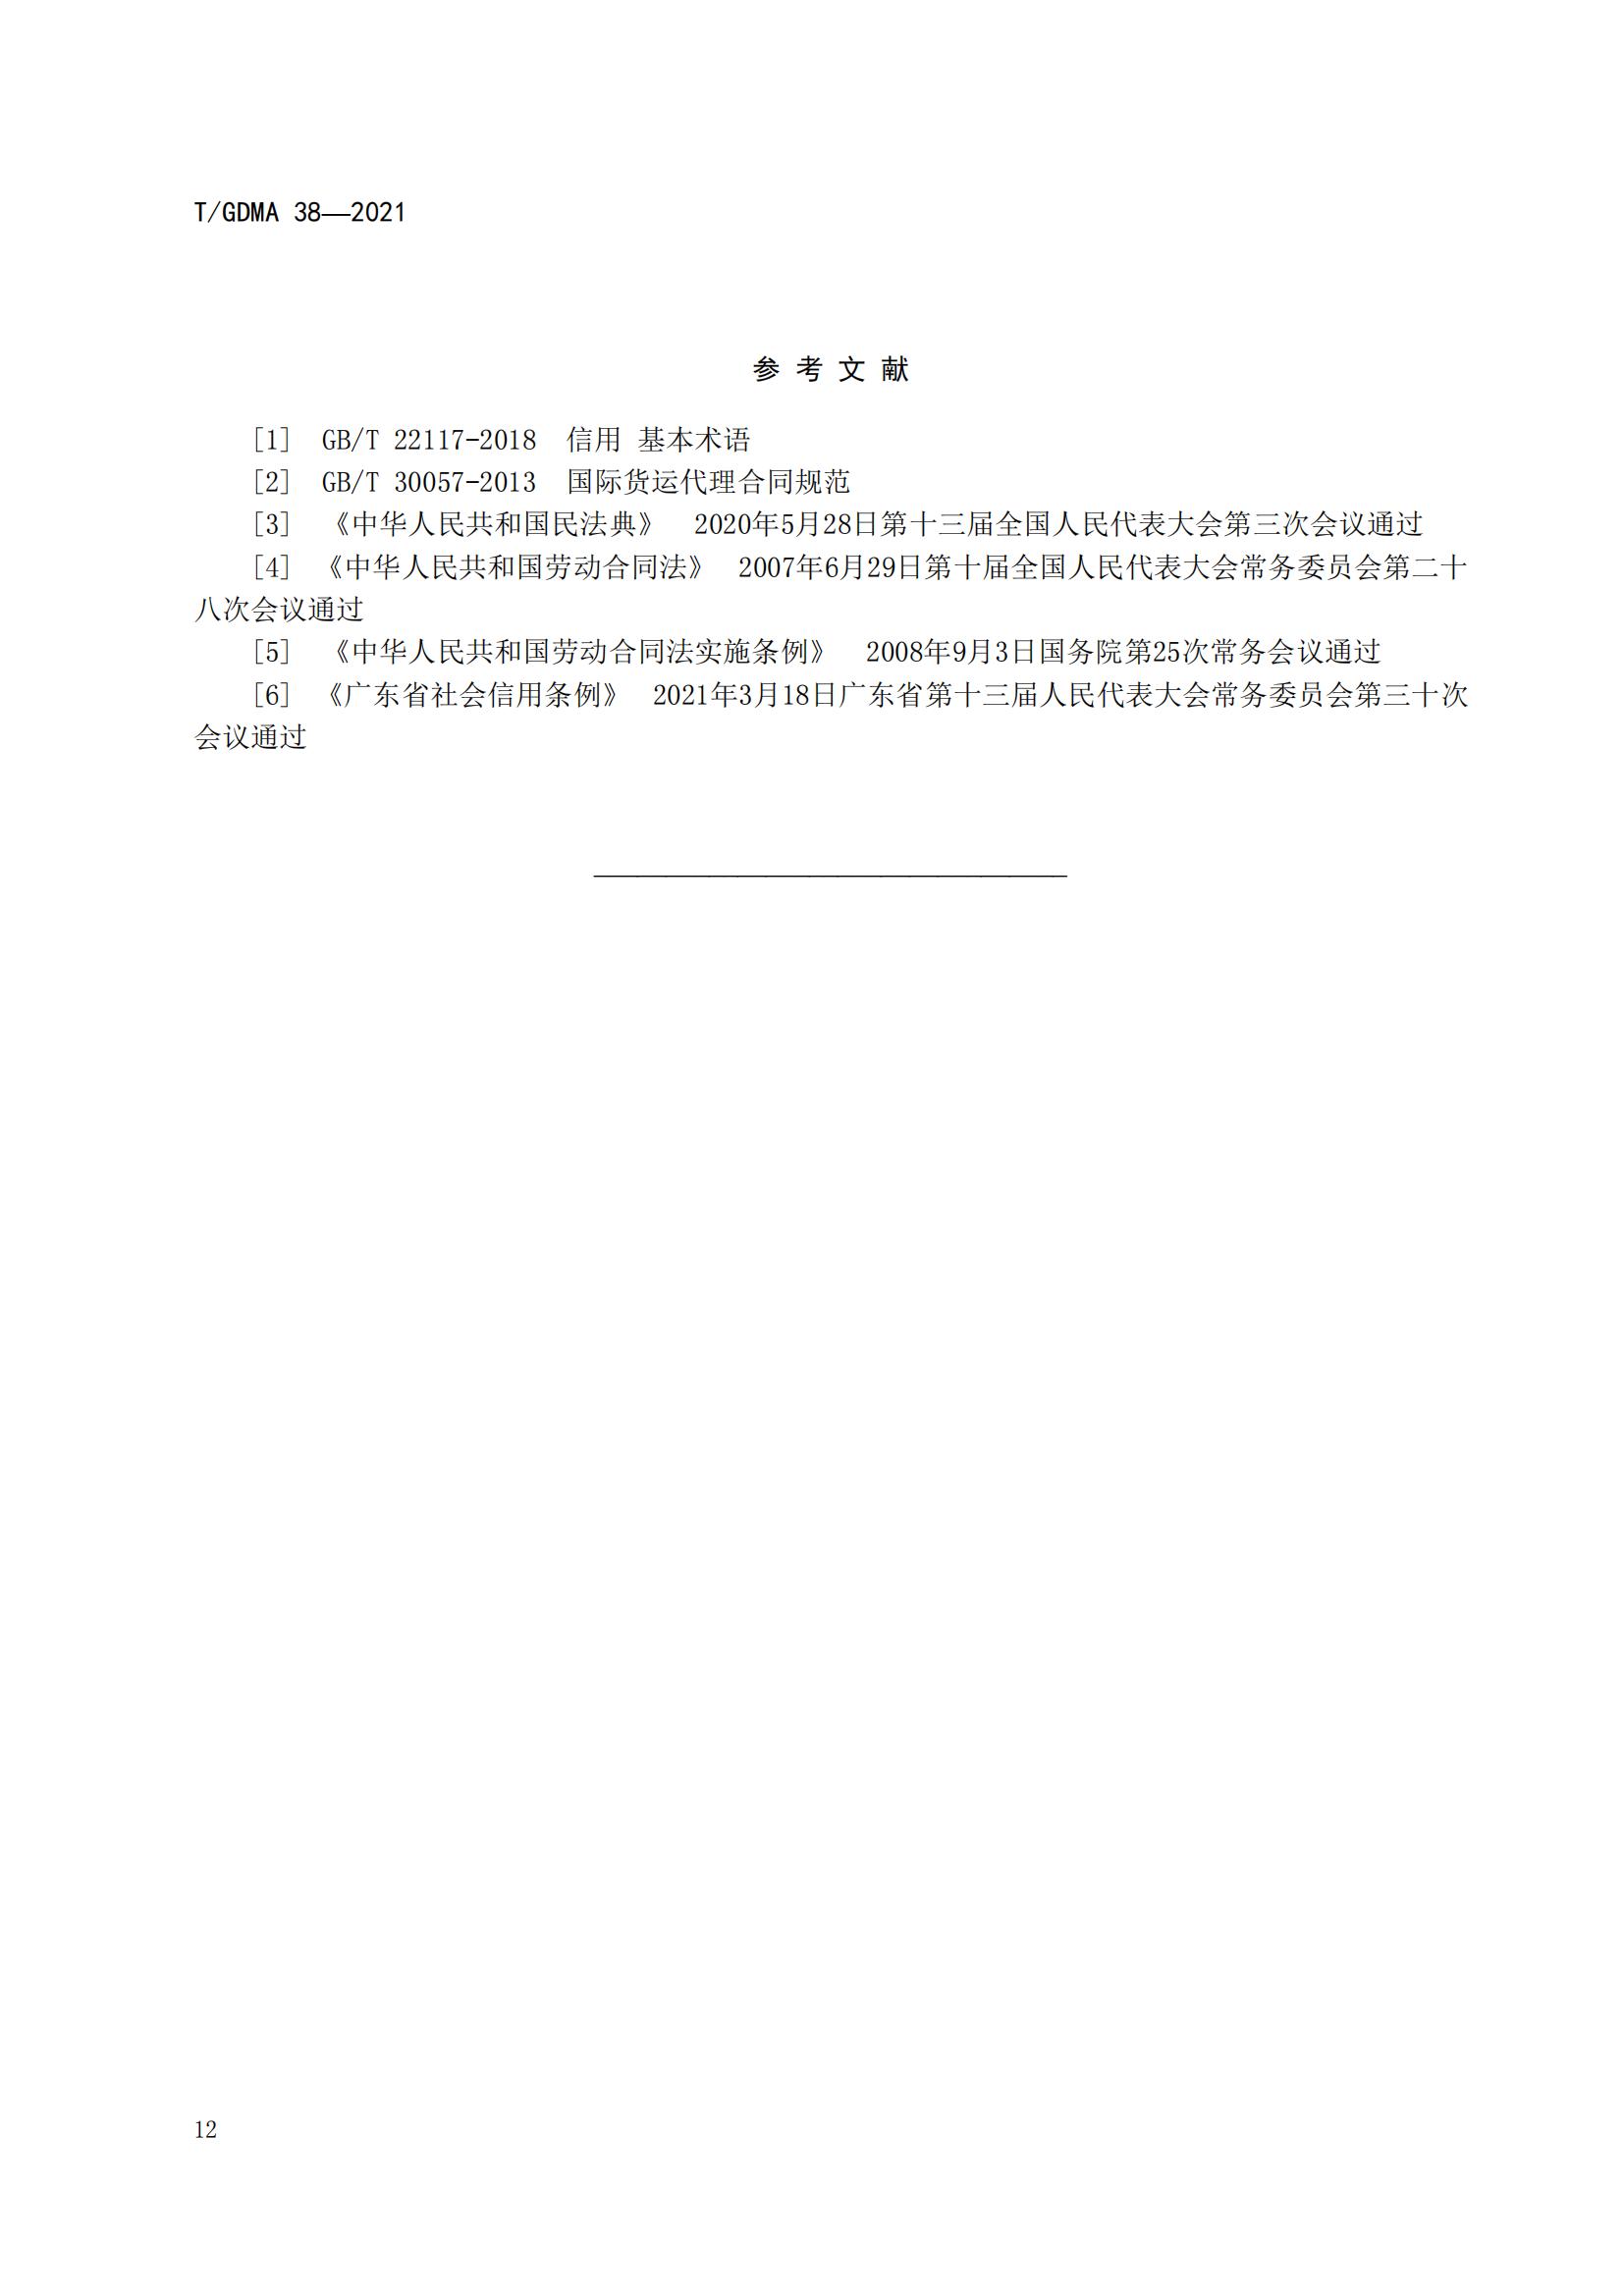 TGDMA 38 广东省守合同重信用企业等级评定规范-发布稿_15.jpg